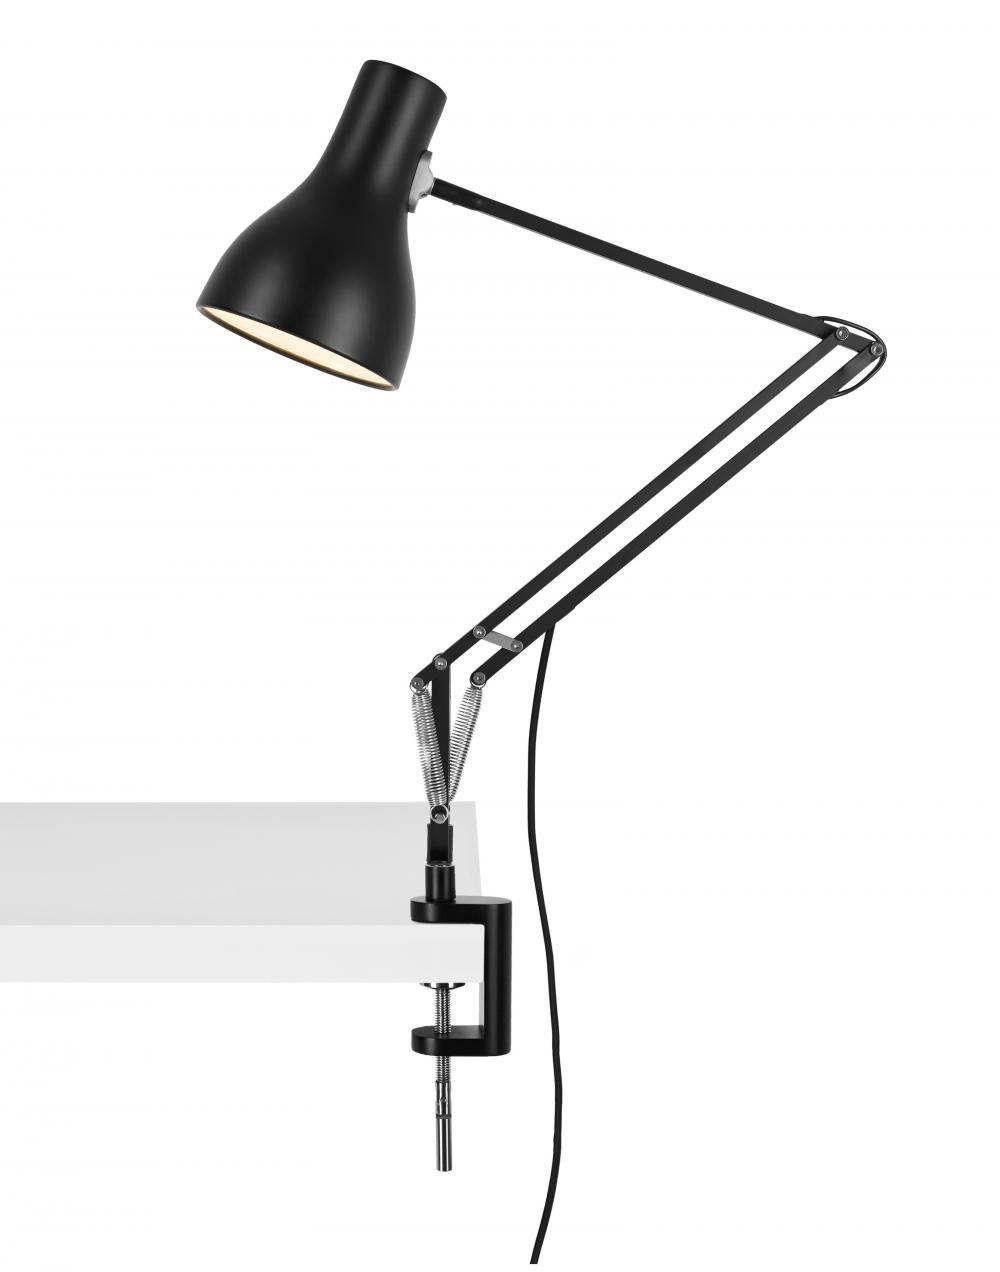 Anglepoise Type 75 Desk Lamp Jet Black Desk Clamp